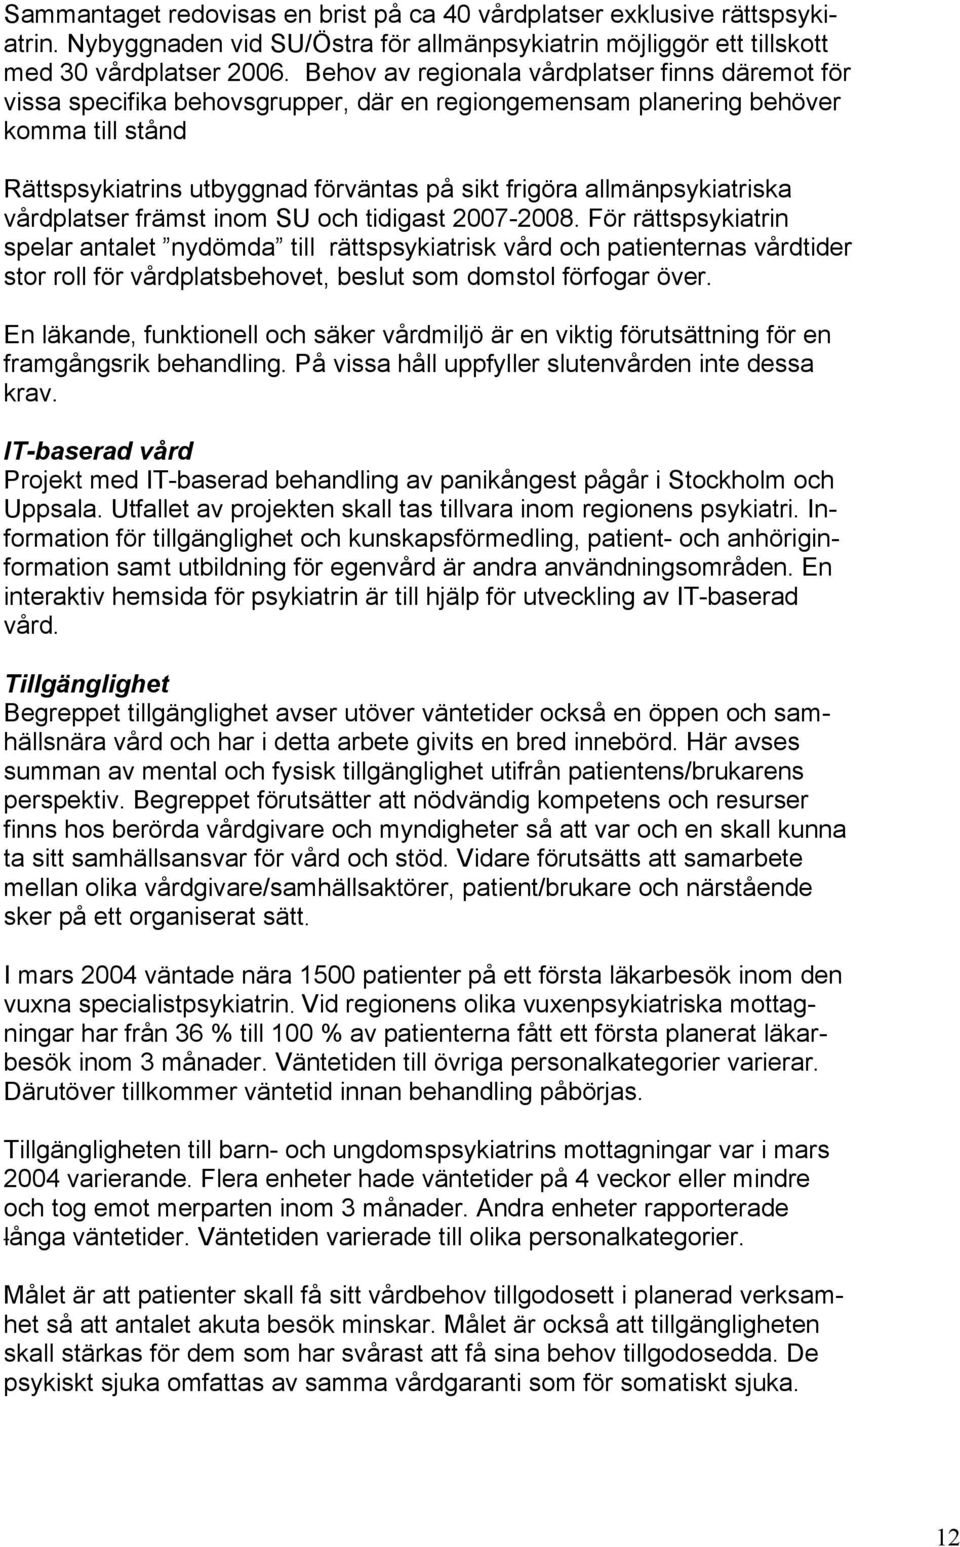 allmänpsykiatriska vårdplatser främst inom SU och tidigast 2007-2008.